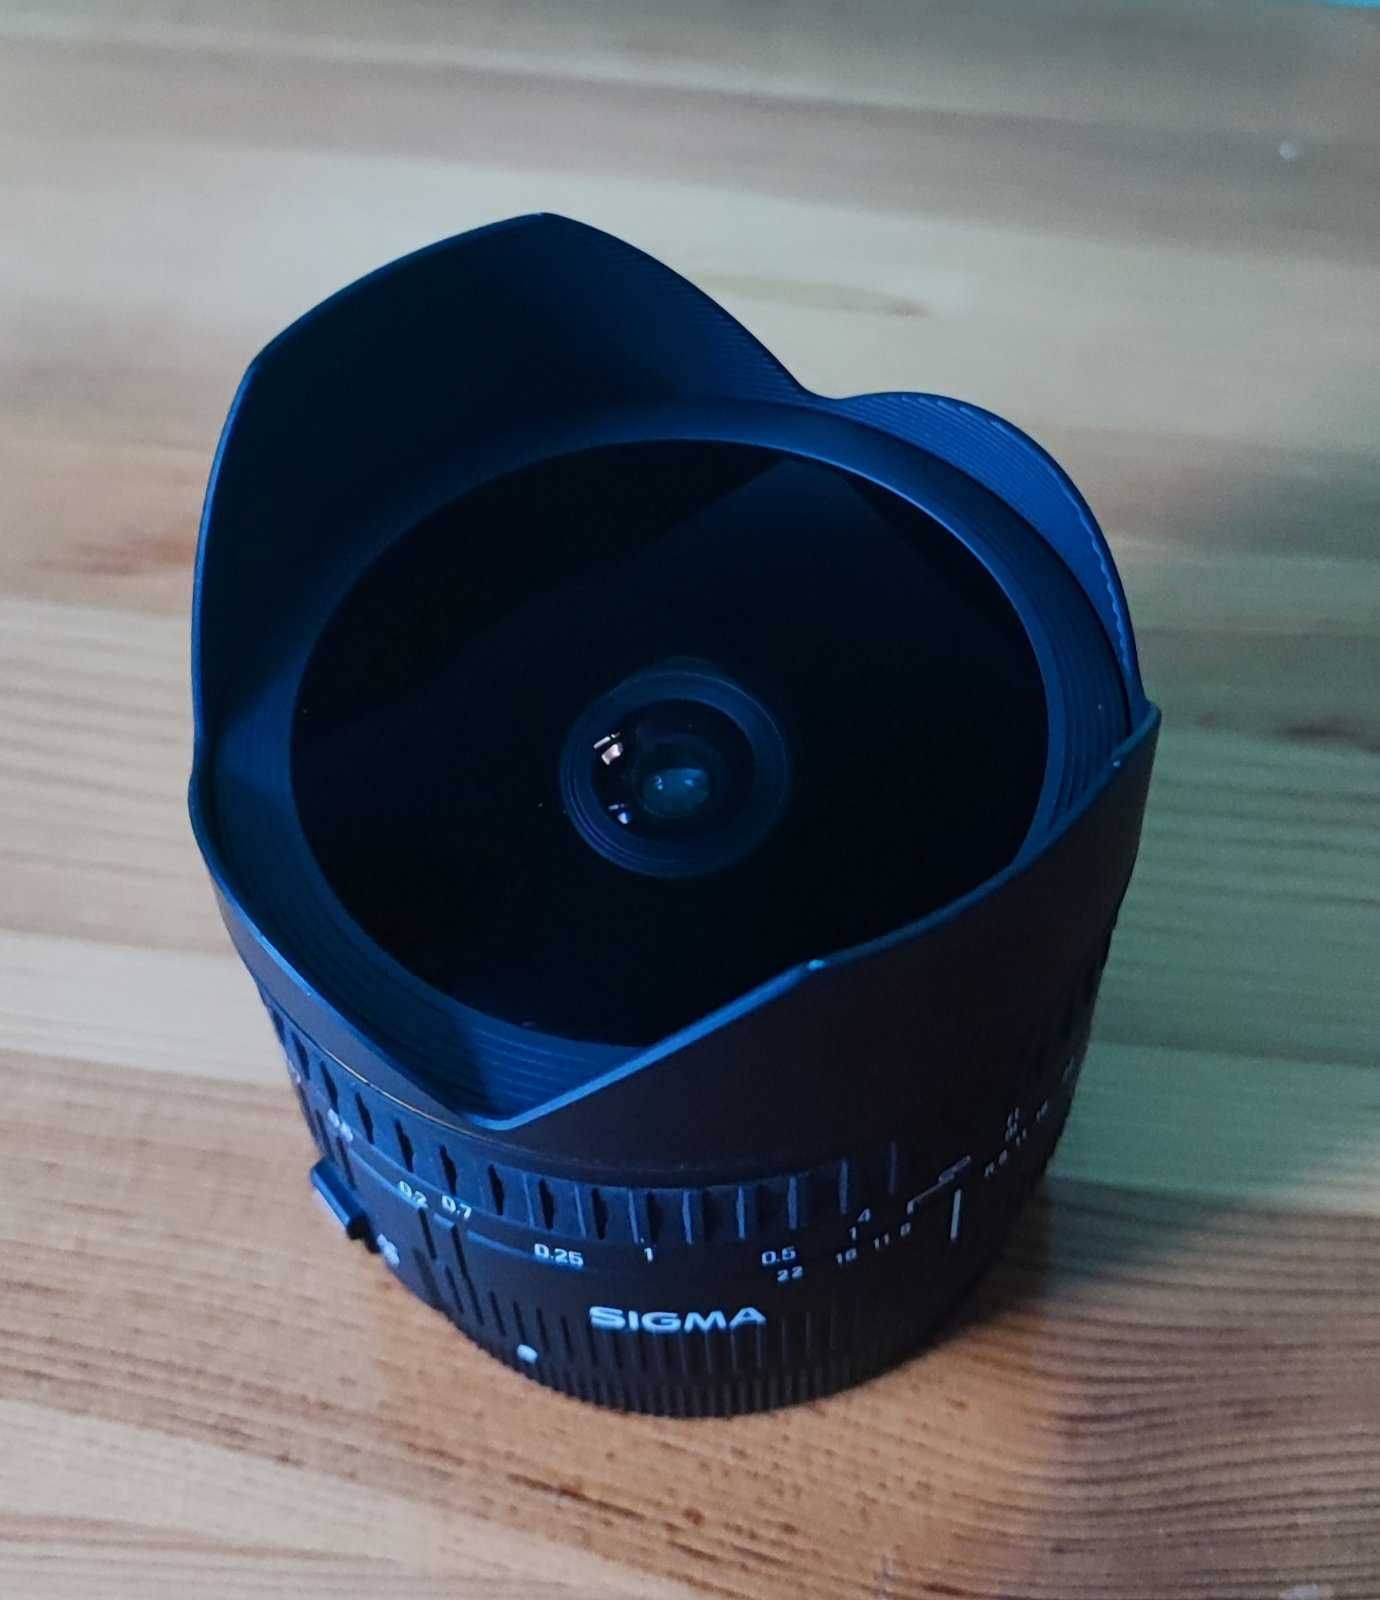 Sigma 15mm f/2.8 EX DG Fisheye за Canon